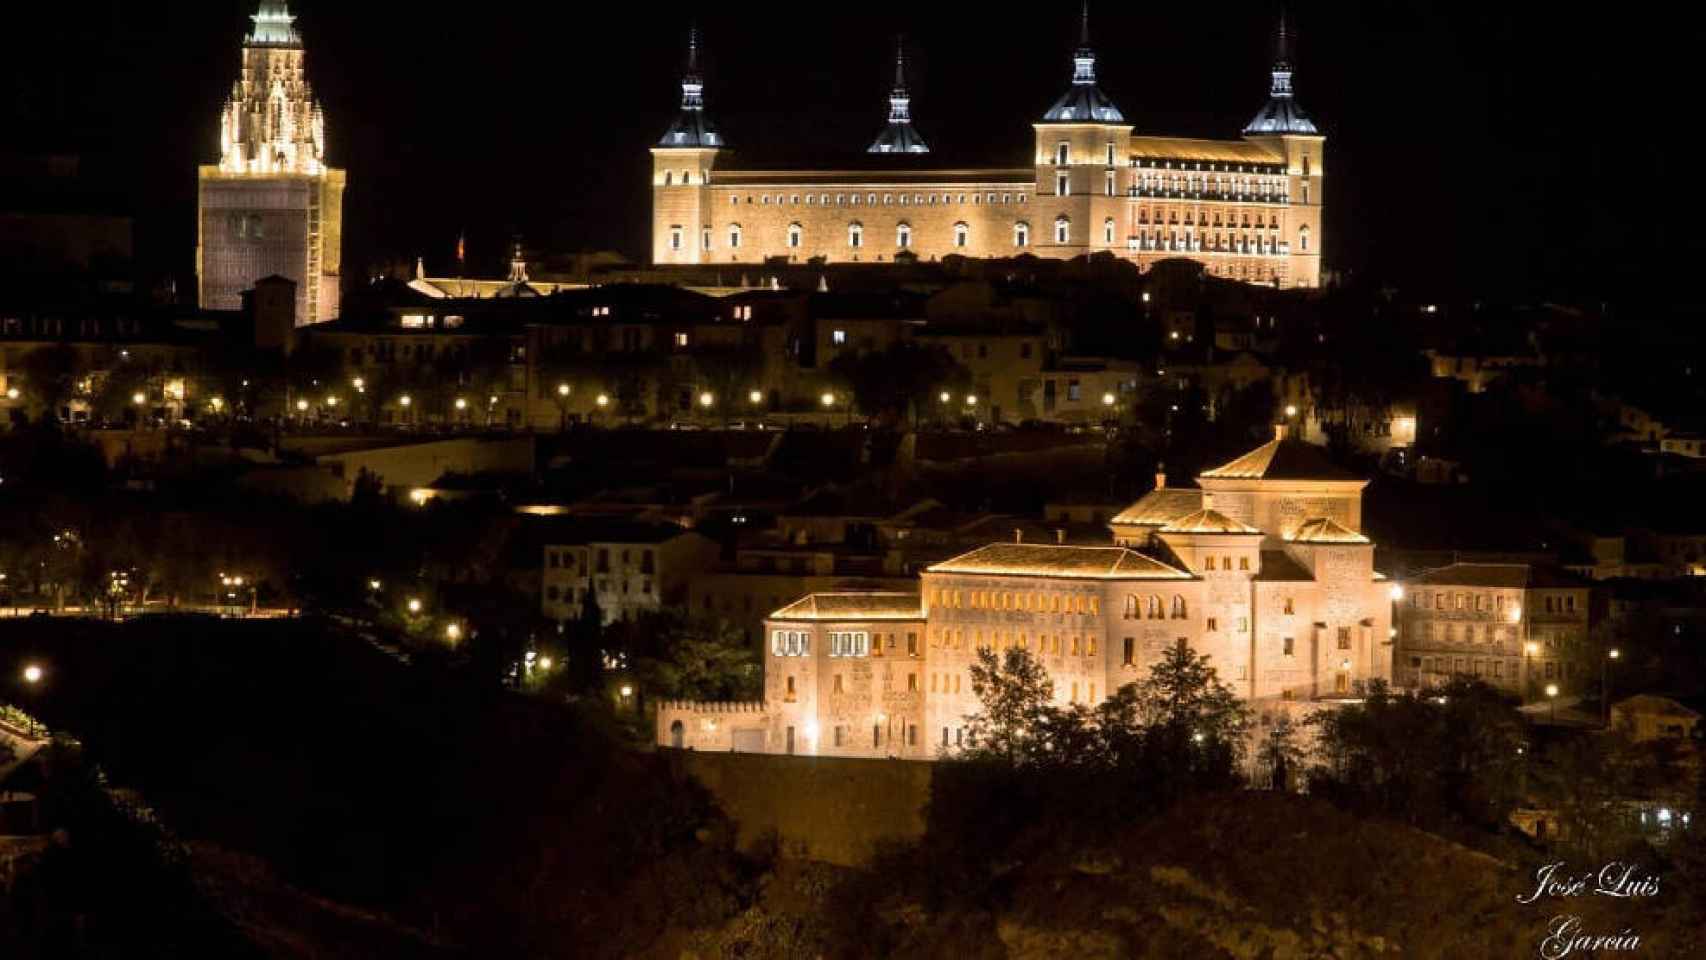 Una panorámica de Toledo iluminada tomada por José Luis García y compartida en Twitter por Milagros Tolón